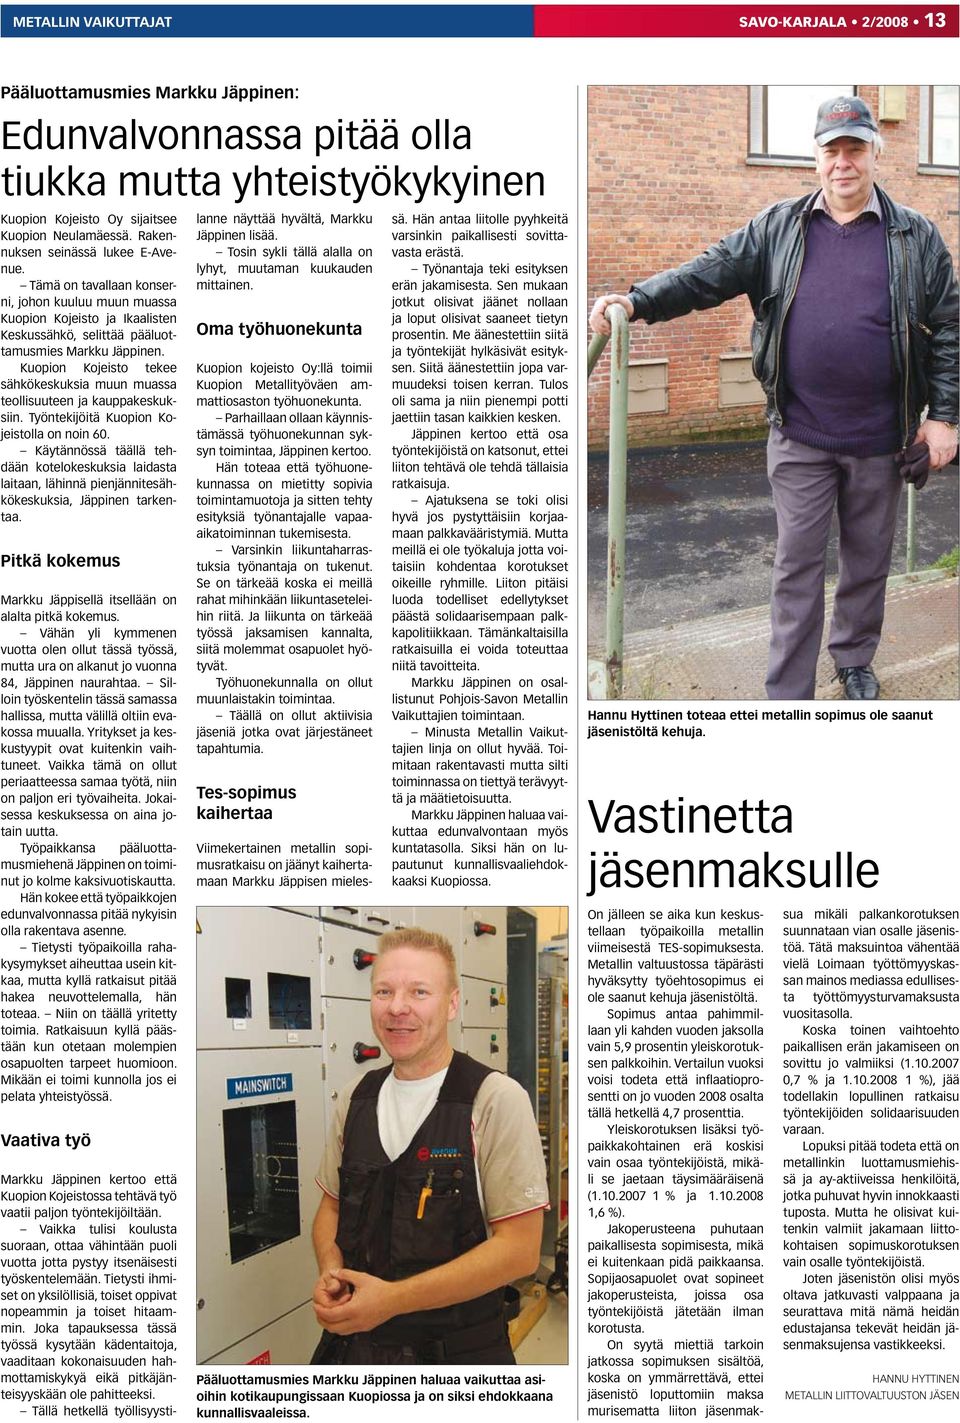 Kuopion Kojeisto tekee sähkökeskuksia muun muassa teollisuuteen ja kauppakeskuksiin. Työntekijöitä Kuopion Kojeistolla on noin 60.